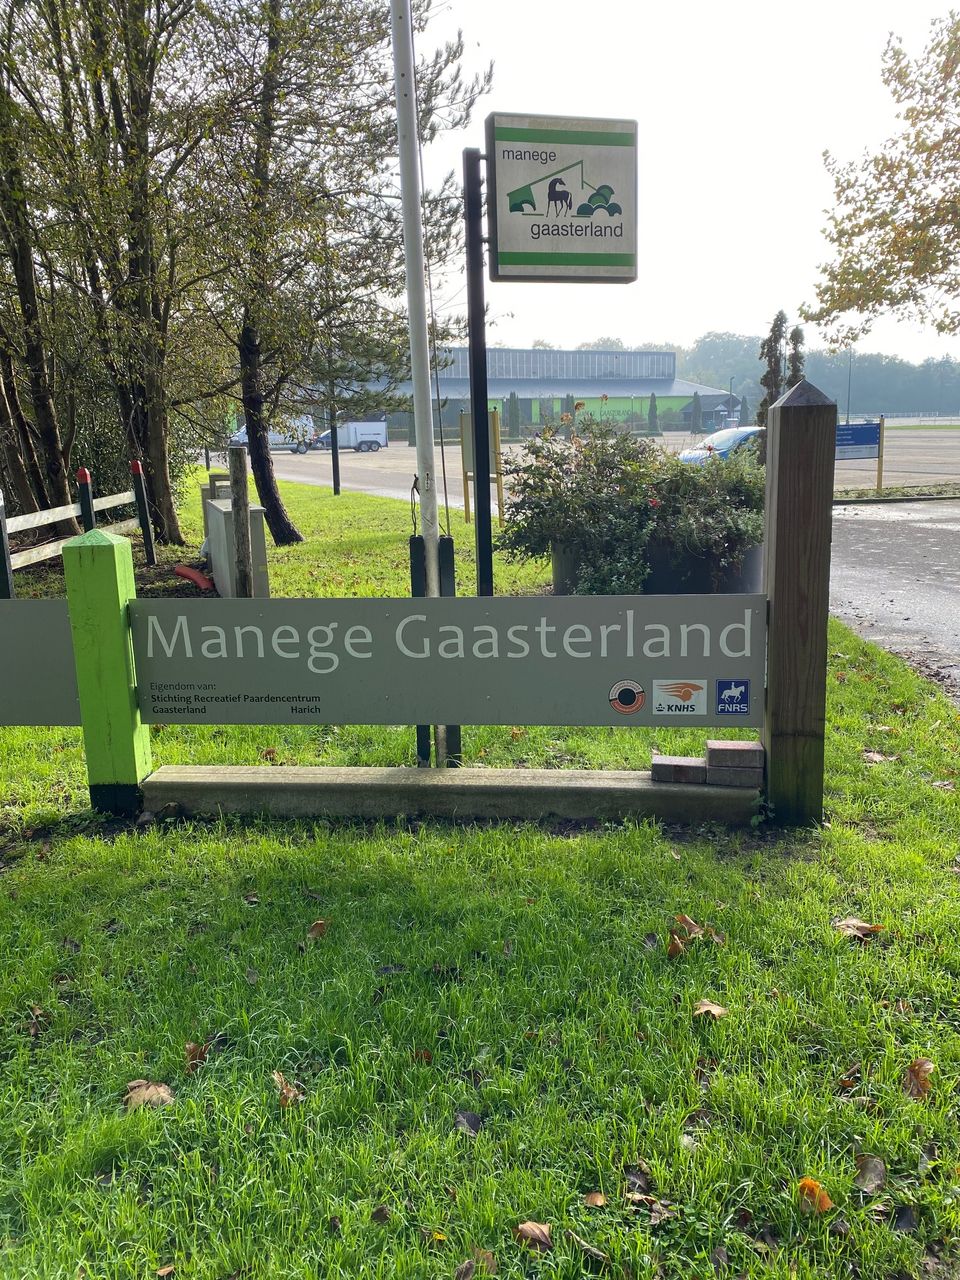 manage gaasterland